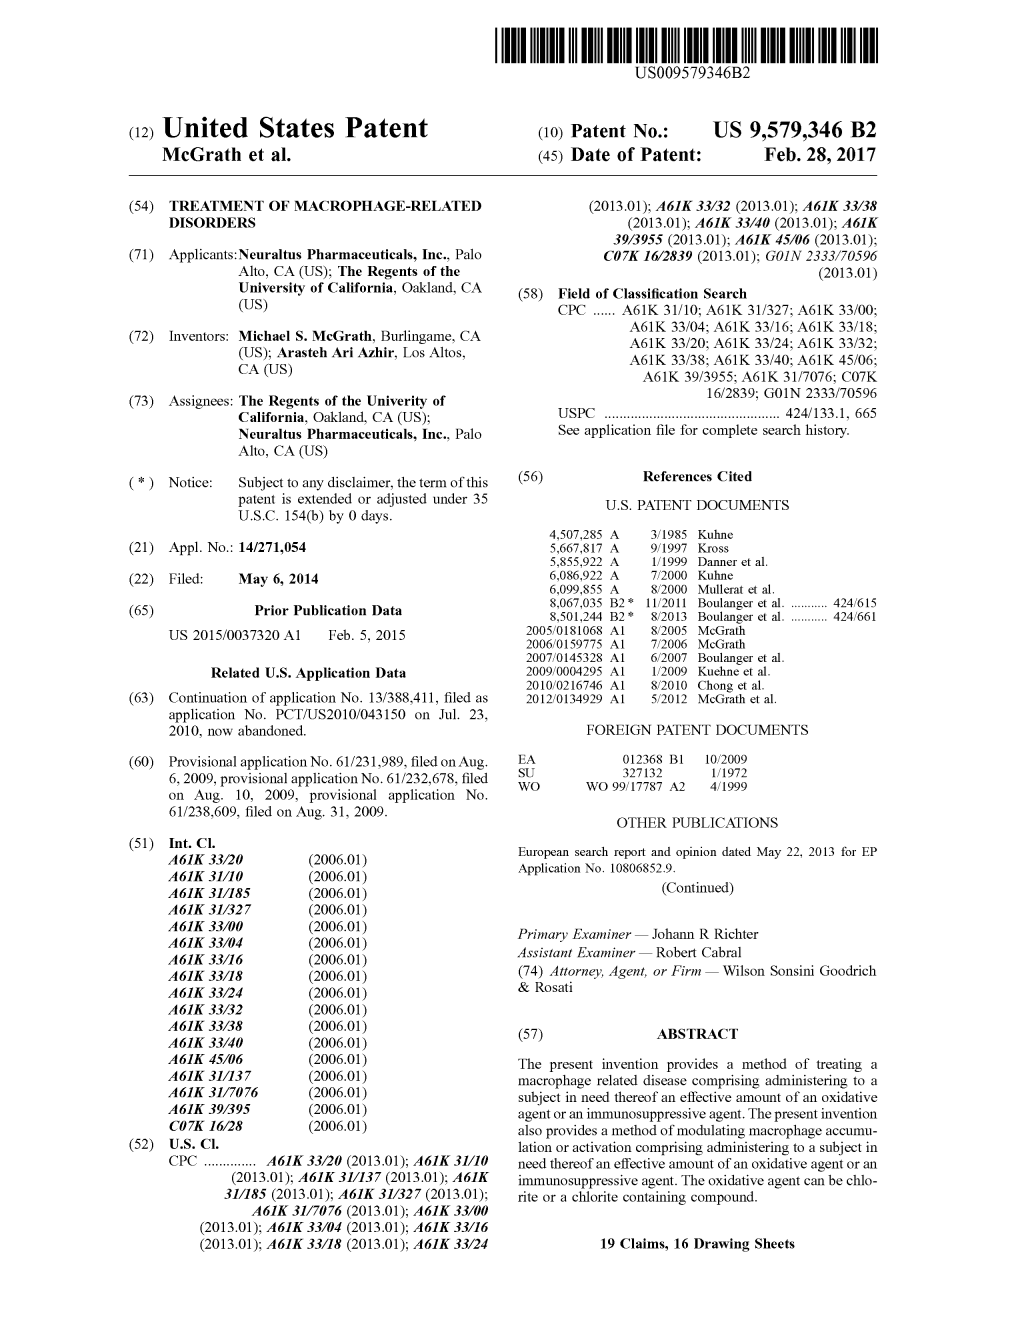 (12) United States Patent (10) Patent No.: US 9,579.346 B2 Mcgrath Et Al